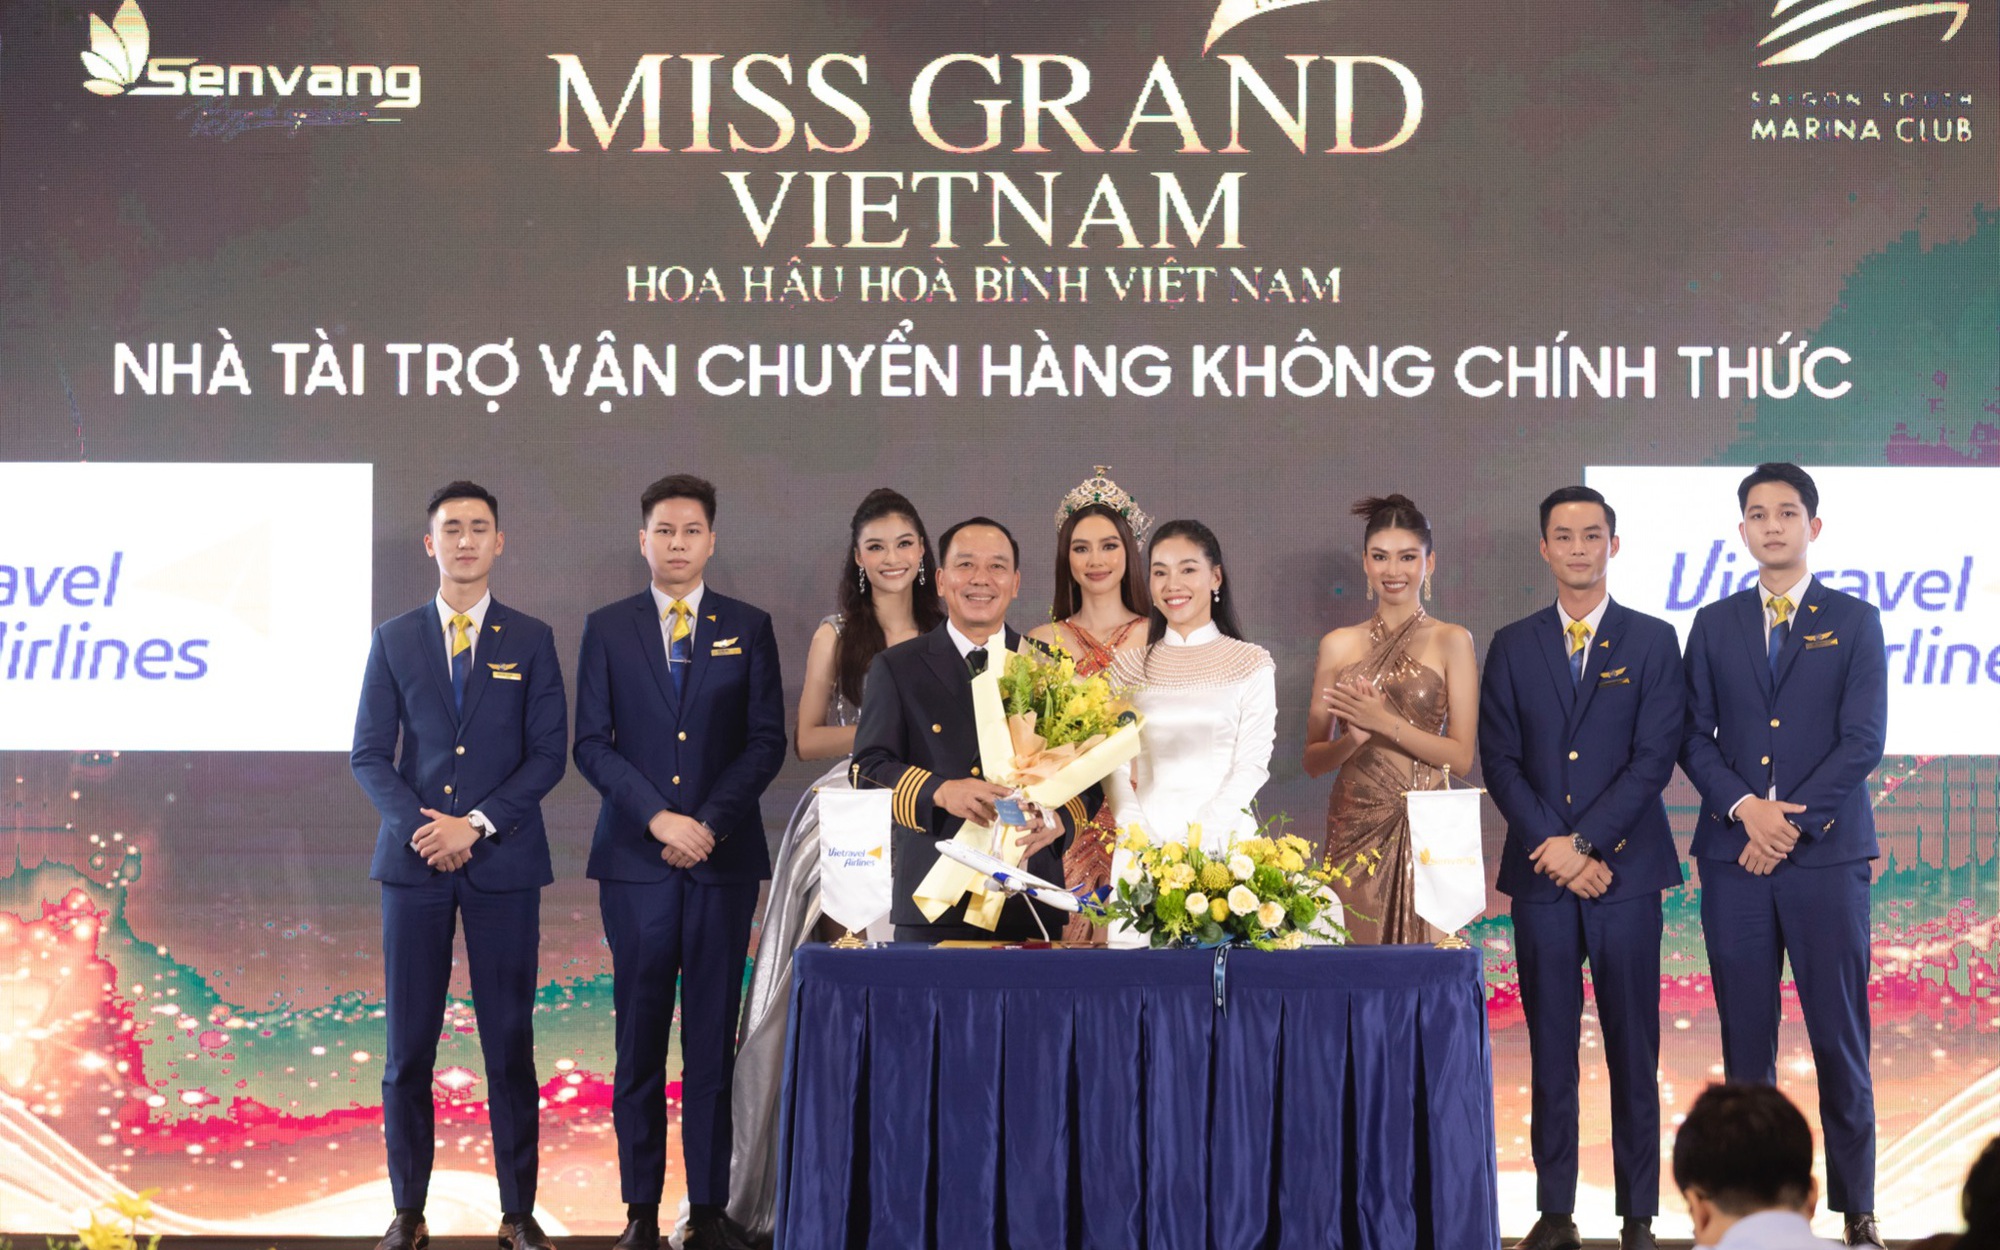 Vietravel Airlines - Đơn vị vận chuyển hàng không chính thức Miss Grand Vietnam 2022